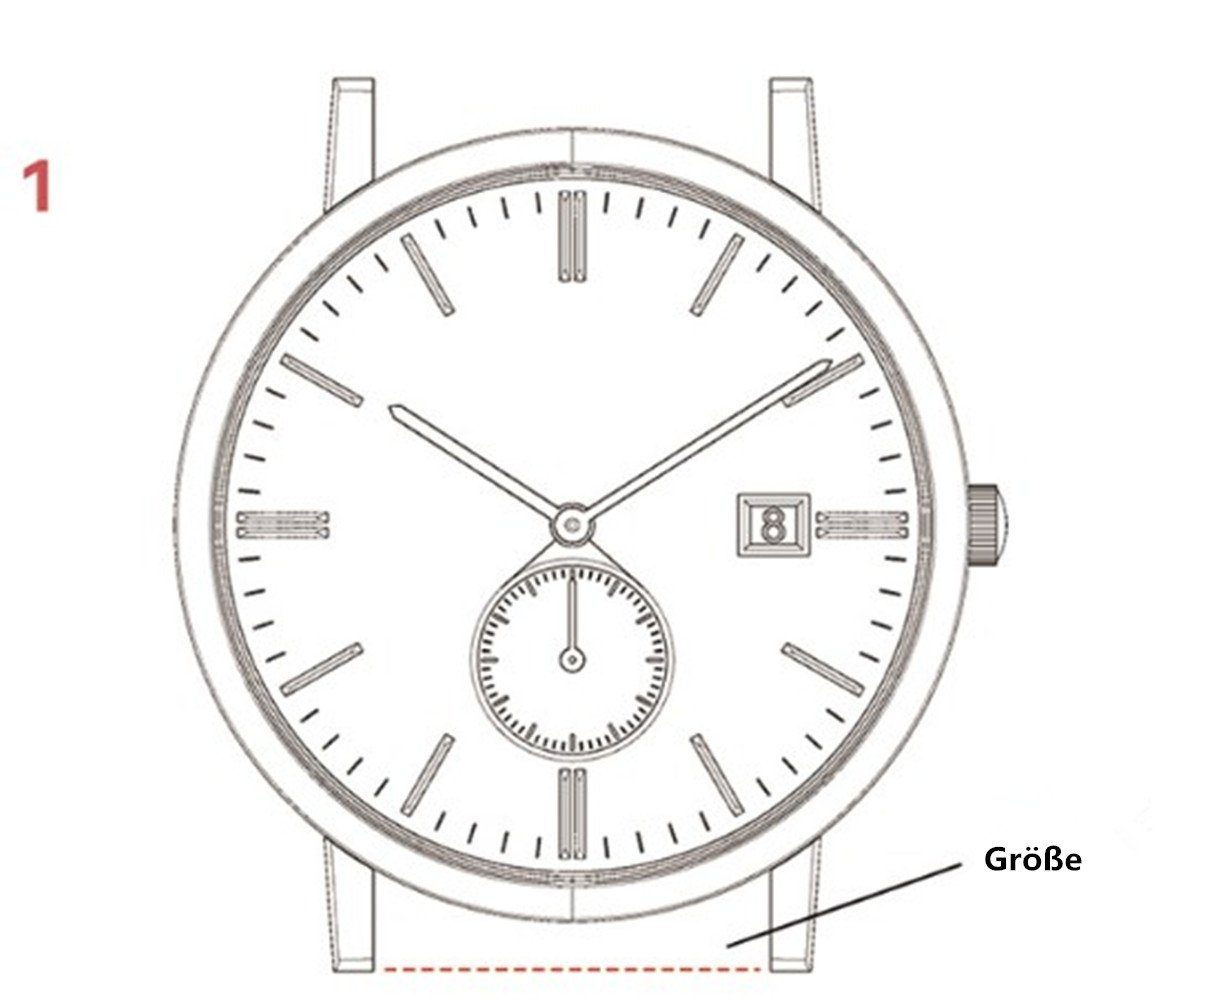 für 8/7 Uhrenarmband mit Magnet Metall Apple Ersatzarmband Series und Armband Armband 38/40/41mm für Verbesserter 42/44/45mm, iWatch XDeer Watch